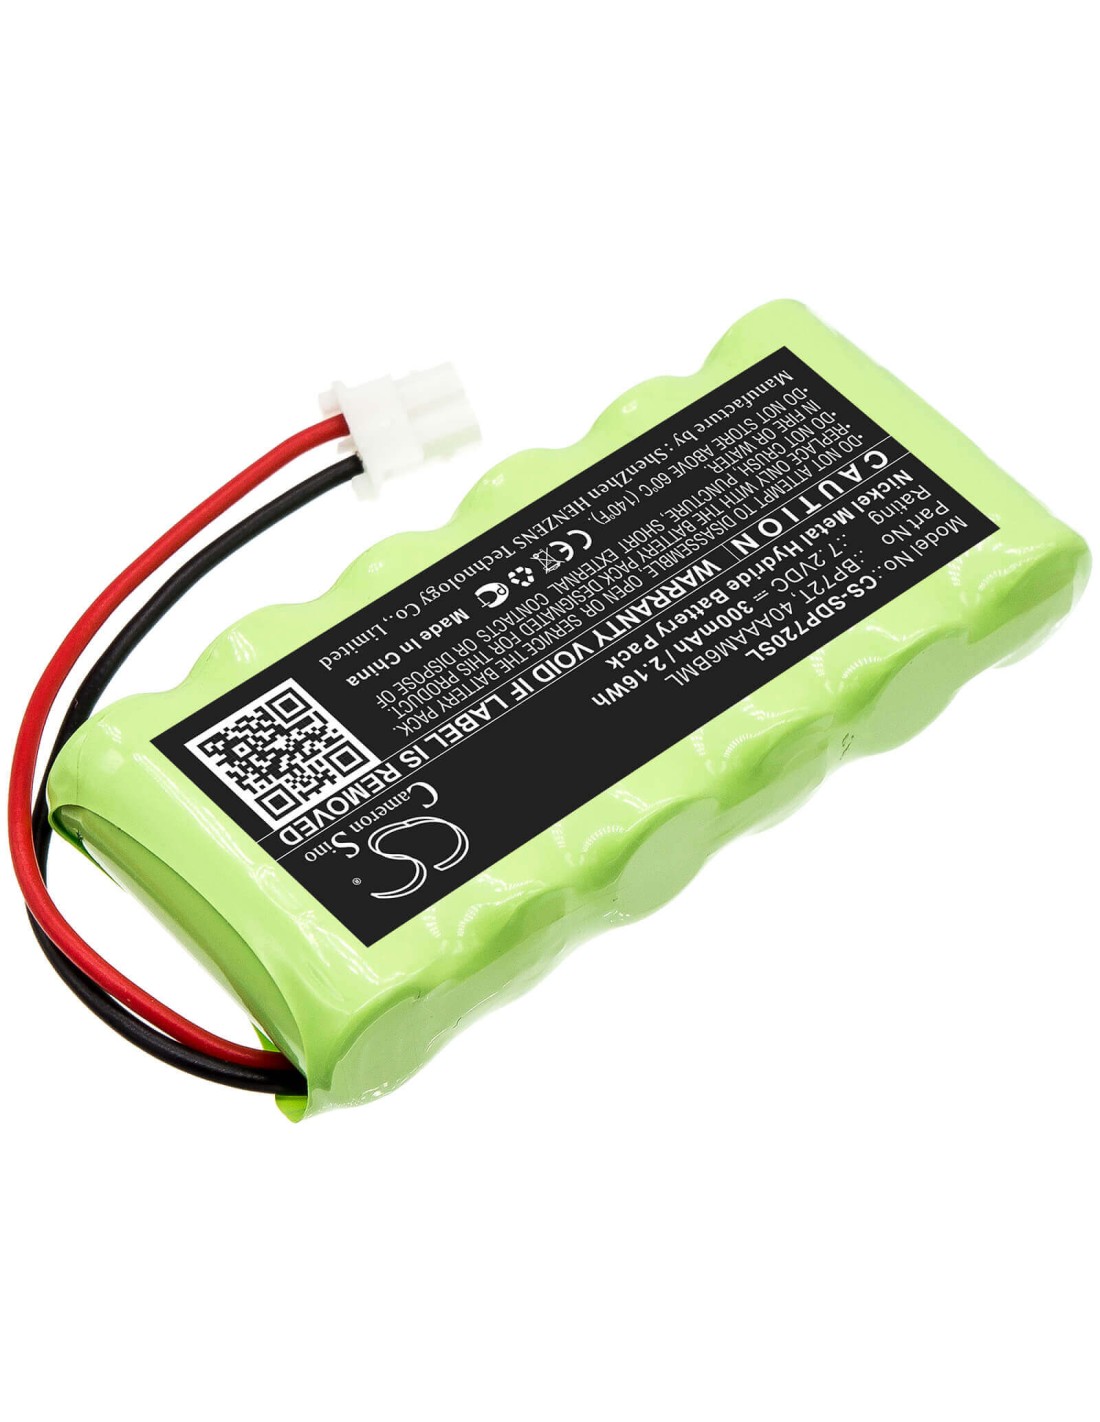 Battery for Dogtra, Deluxe Bird Launcher Transmitter 7.2V, 300mAh - 2.16Wh